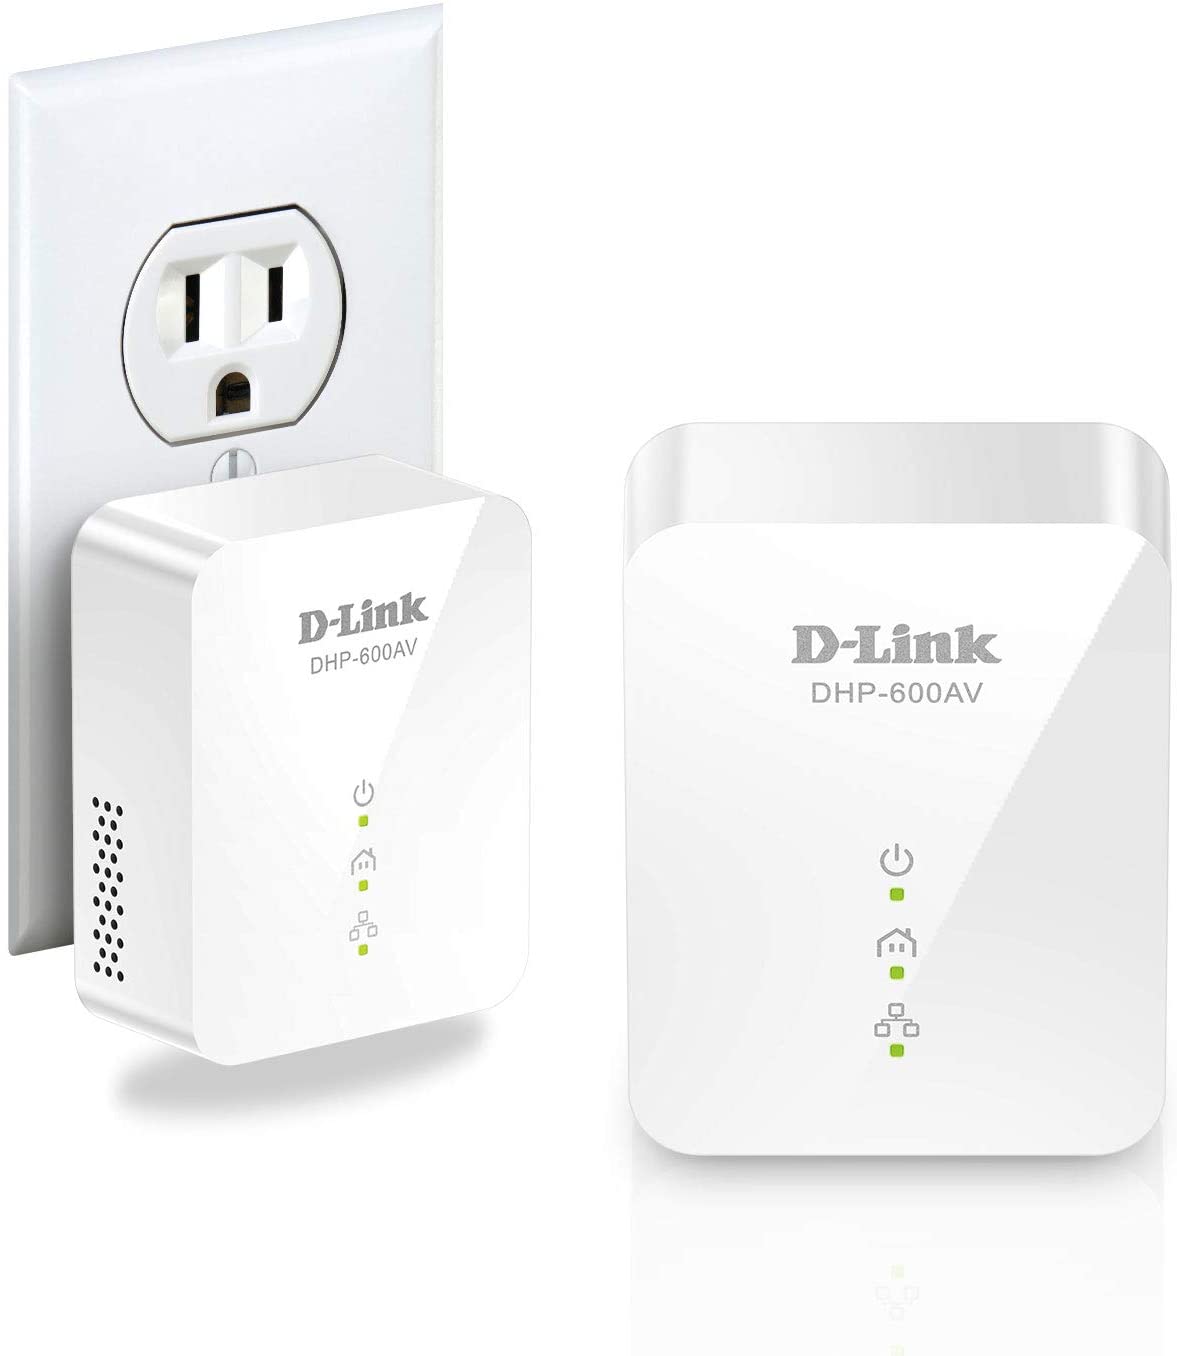 D-Link Powerline Adapter